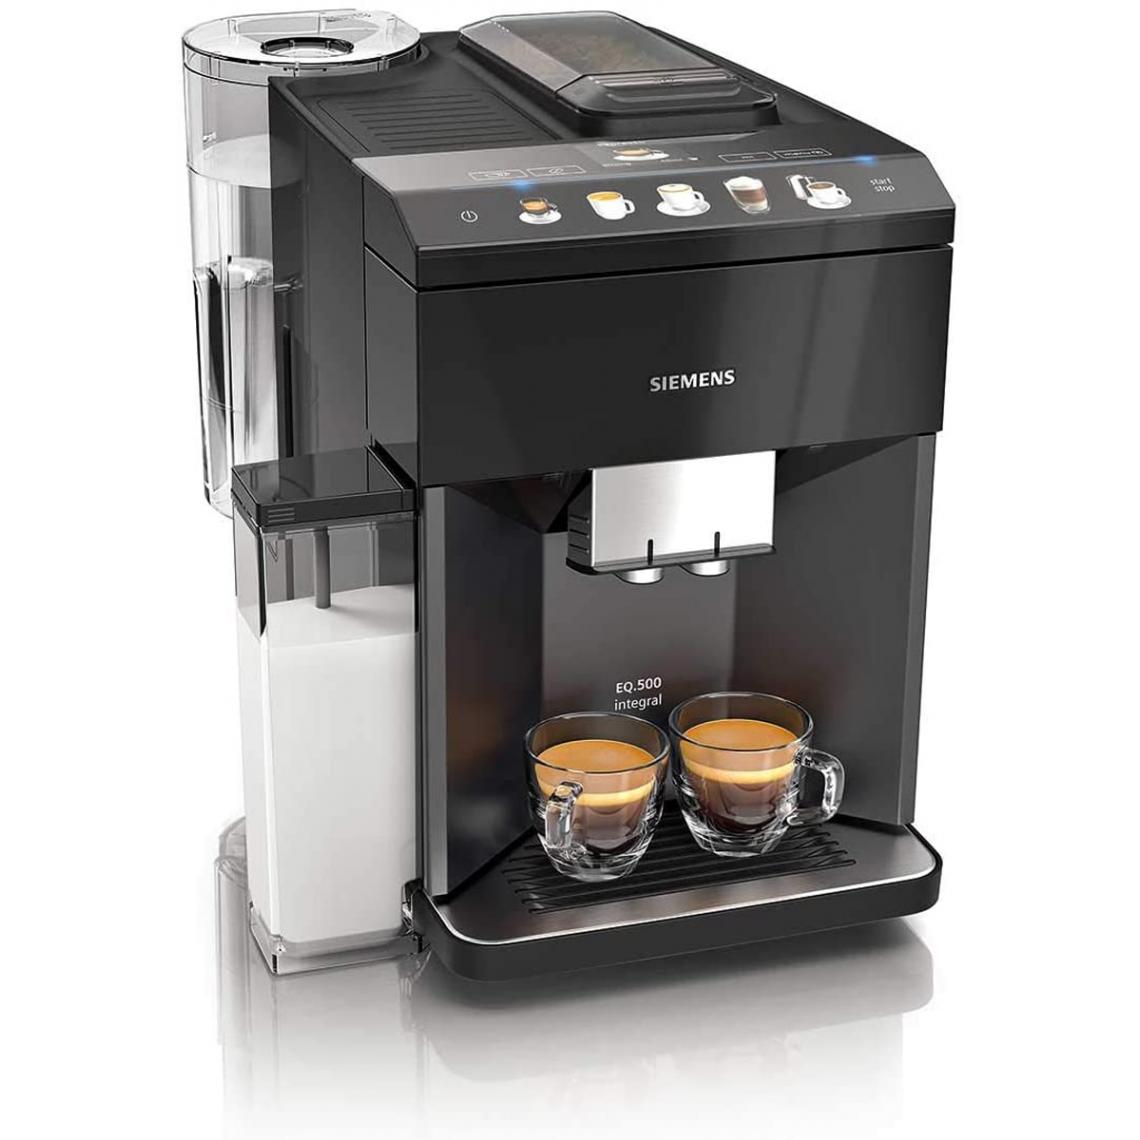 Siemens - Espresso Broyeur EQ.500 integral TQ505R09 Noir - Machine expresso